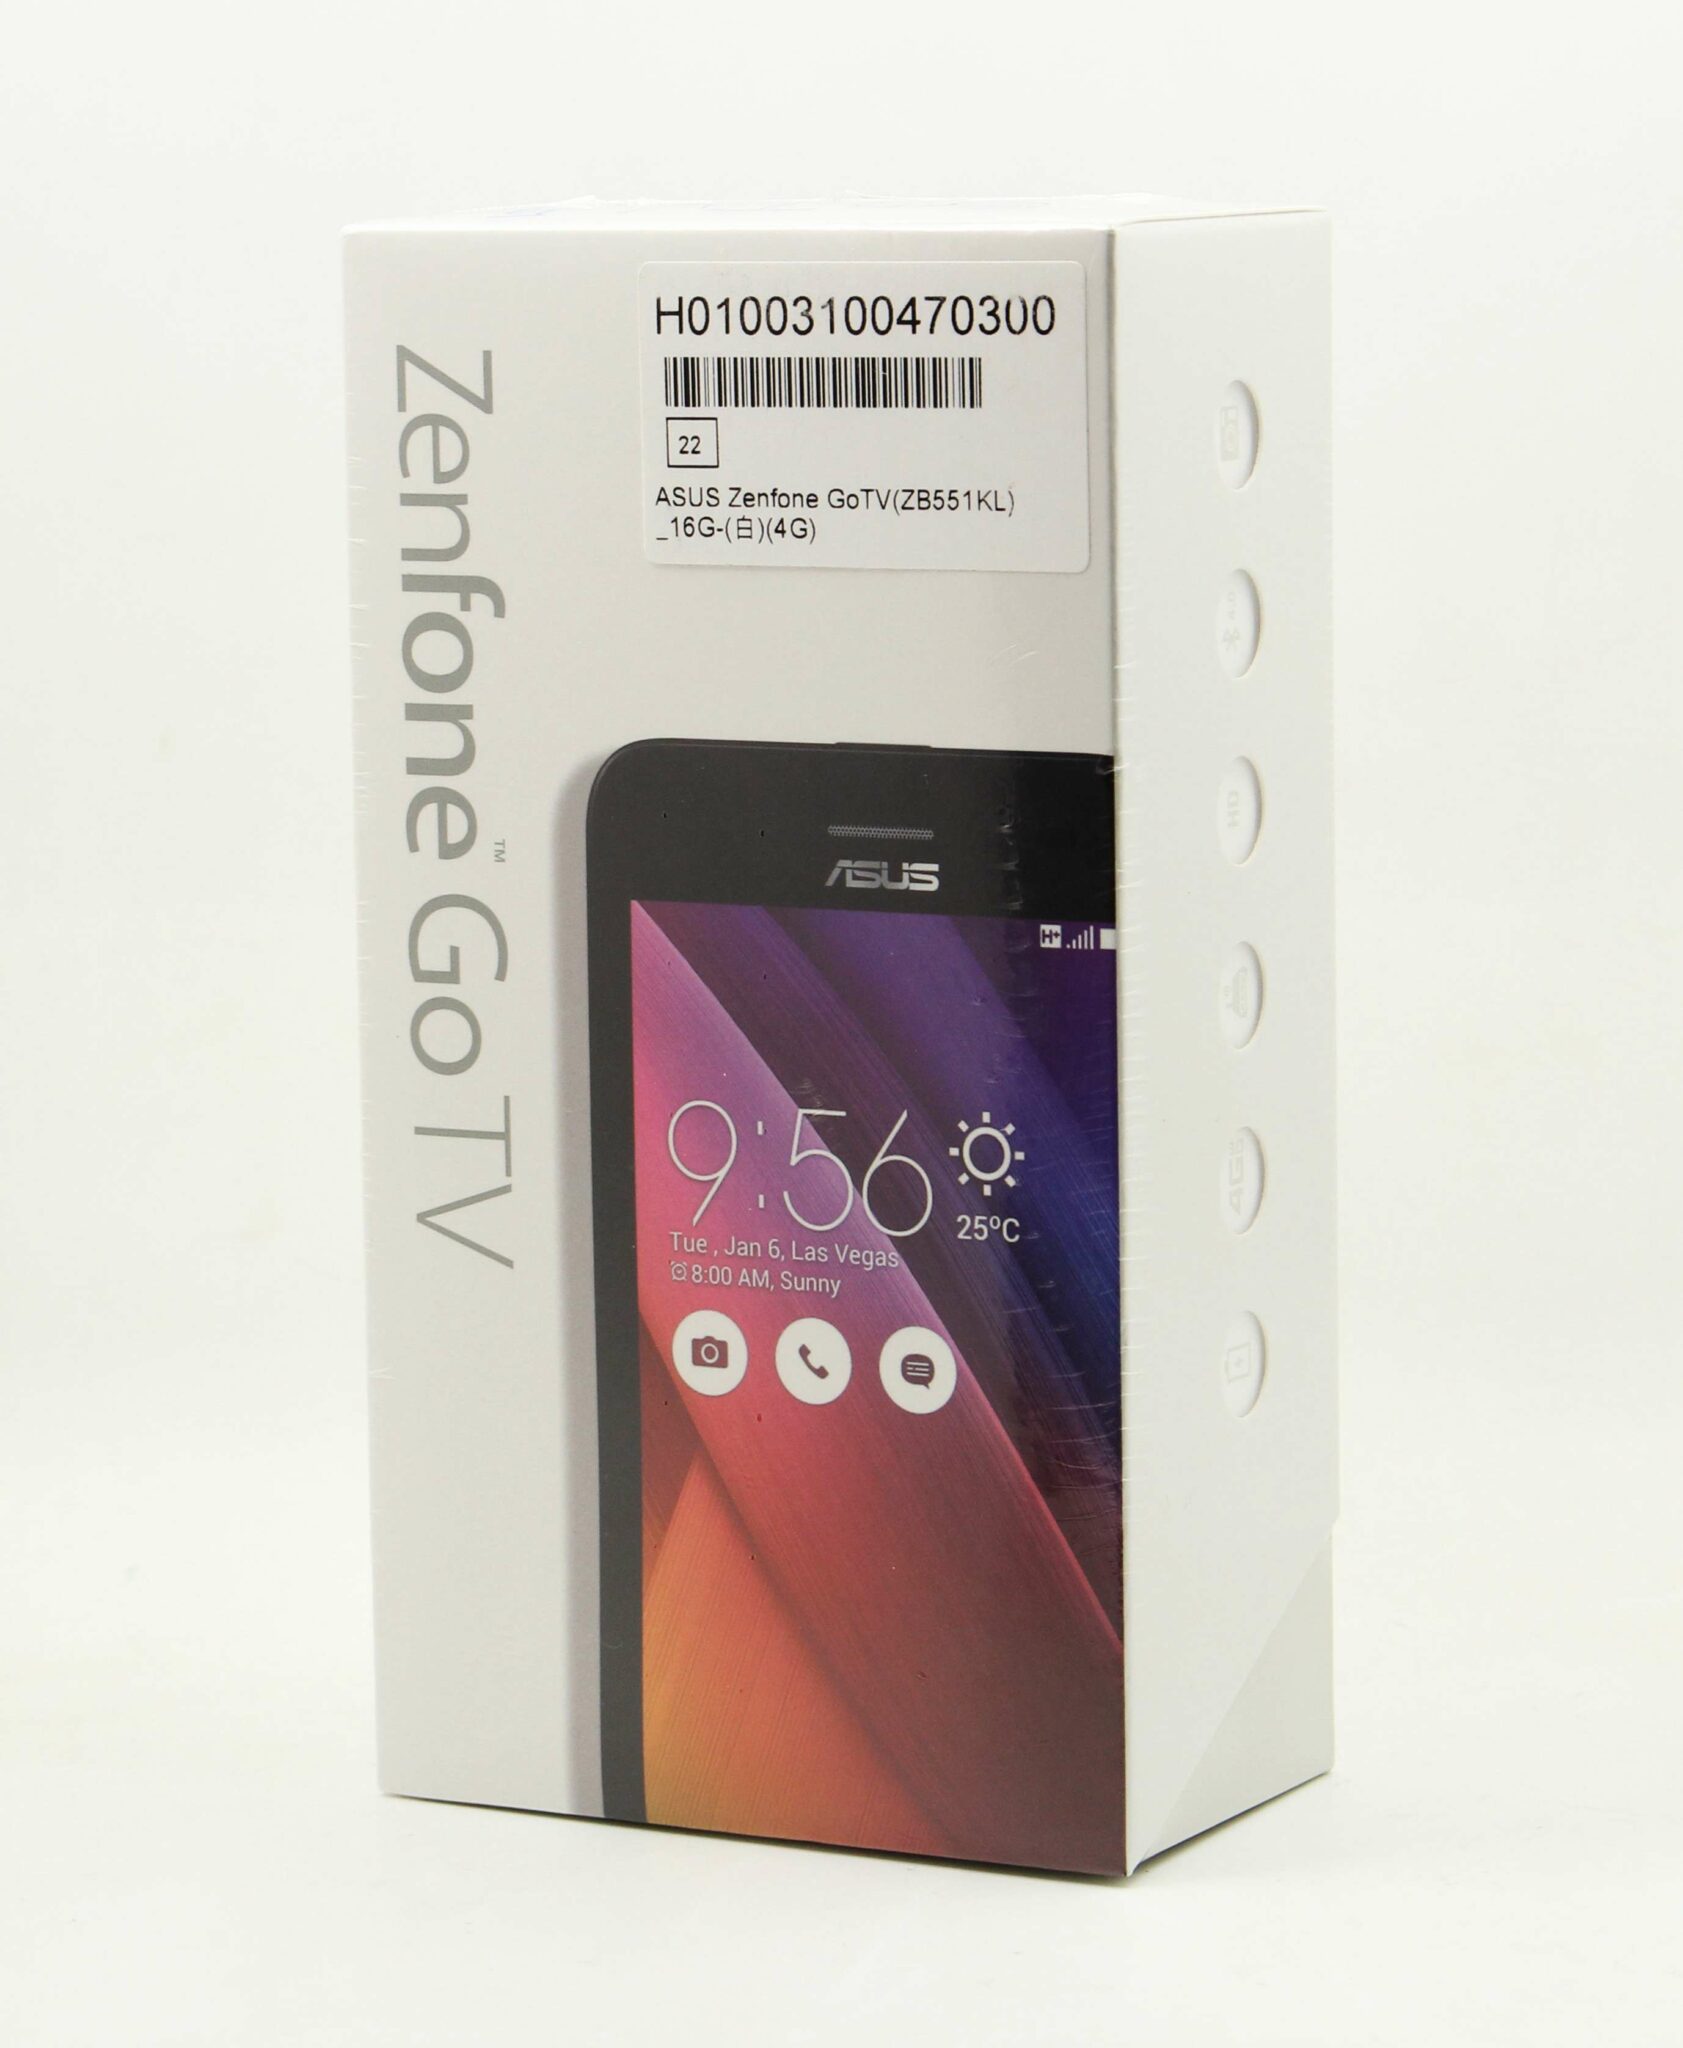 高雄中古手機收購 Asus Zenfone Go Tv Zb551kl 2g 16g 全新未拆空機 青蘋果二手3c 拍賣回收買賣領導品牌